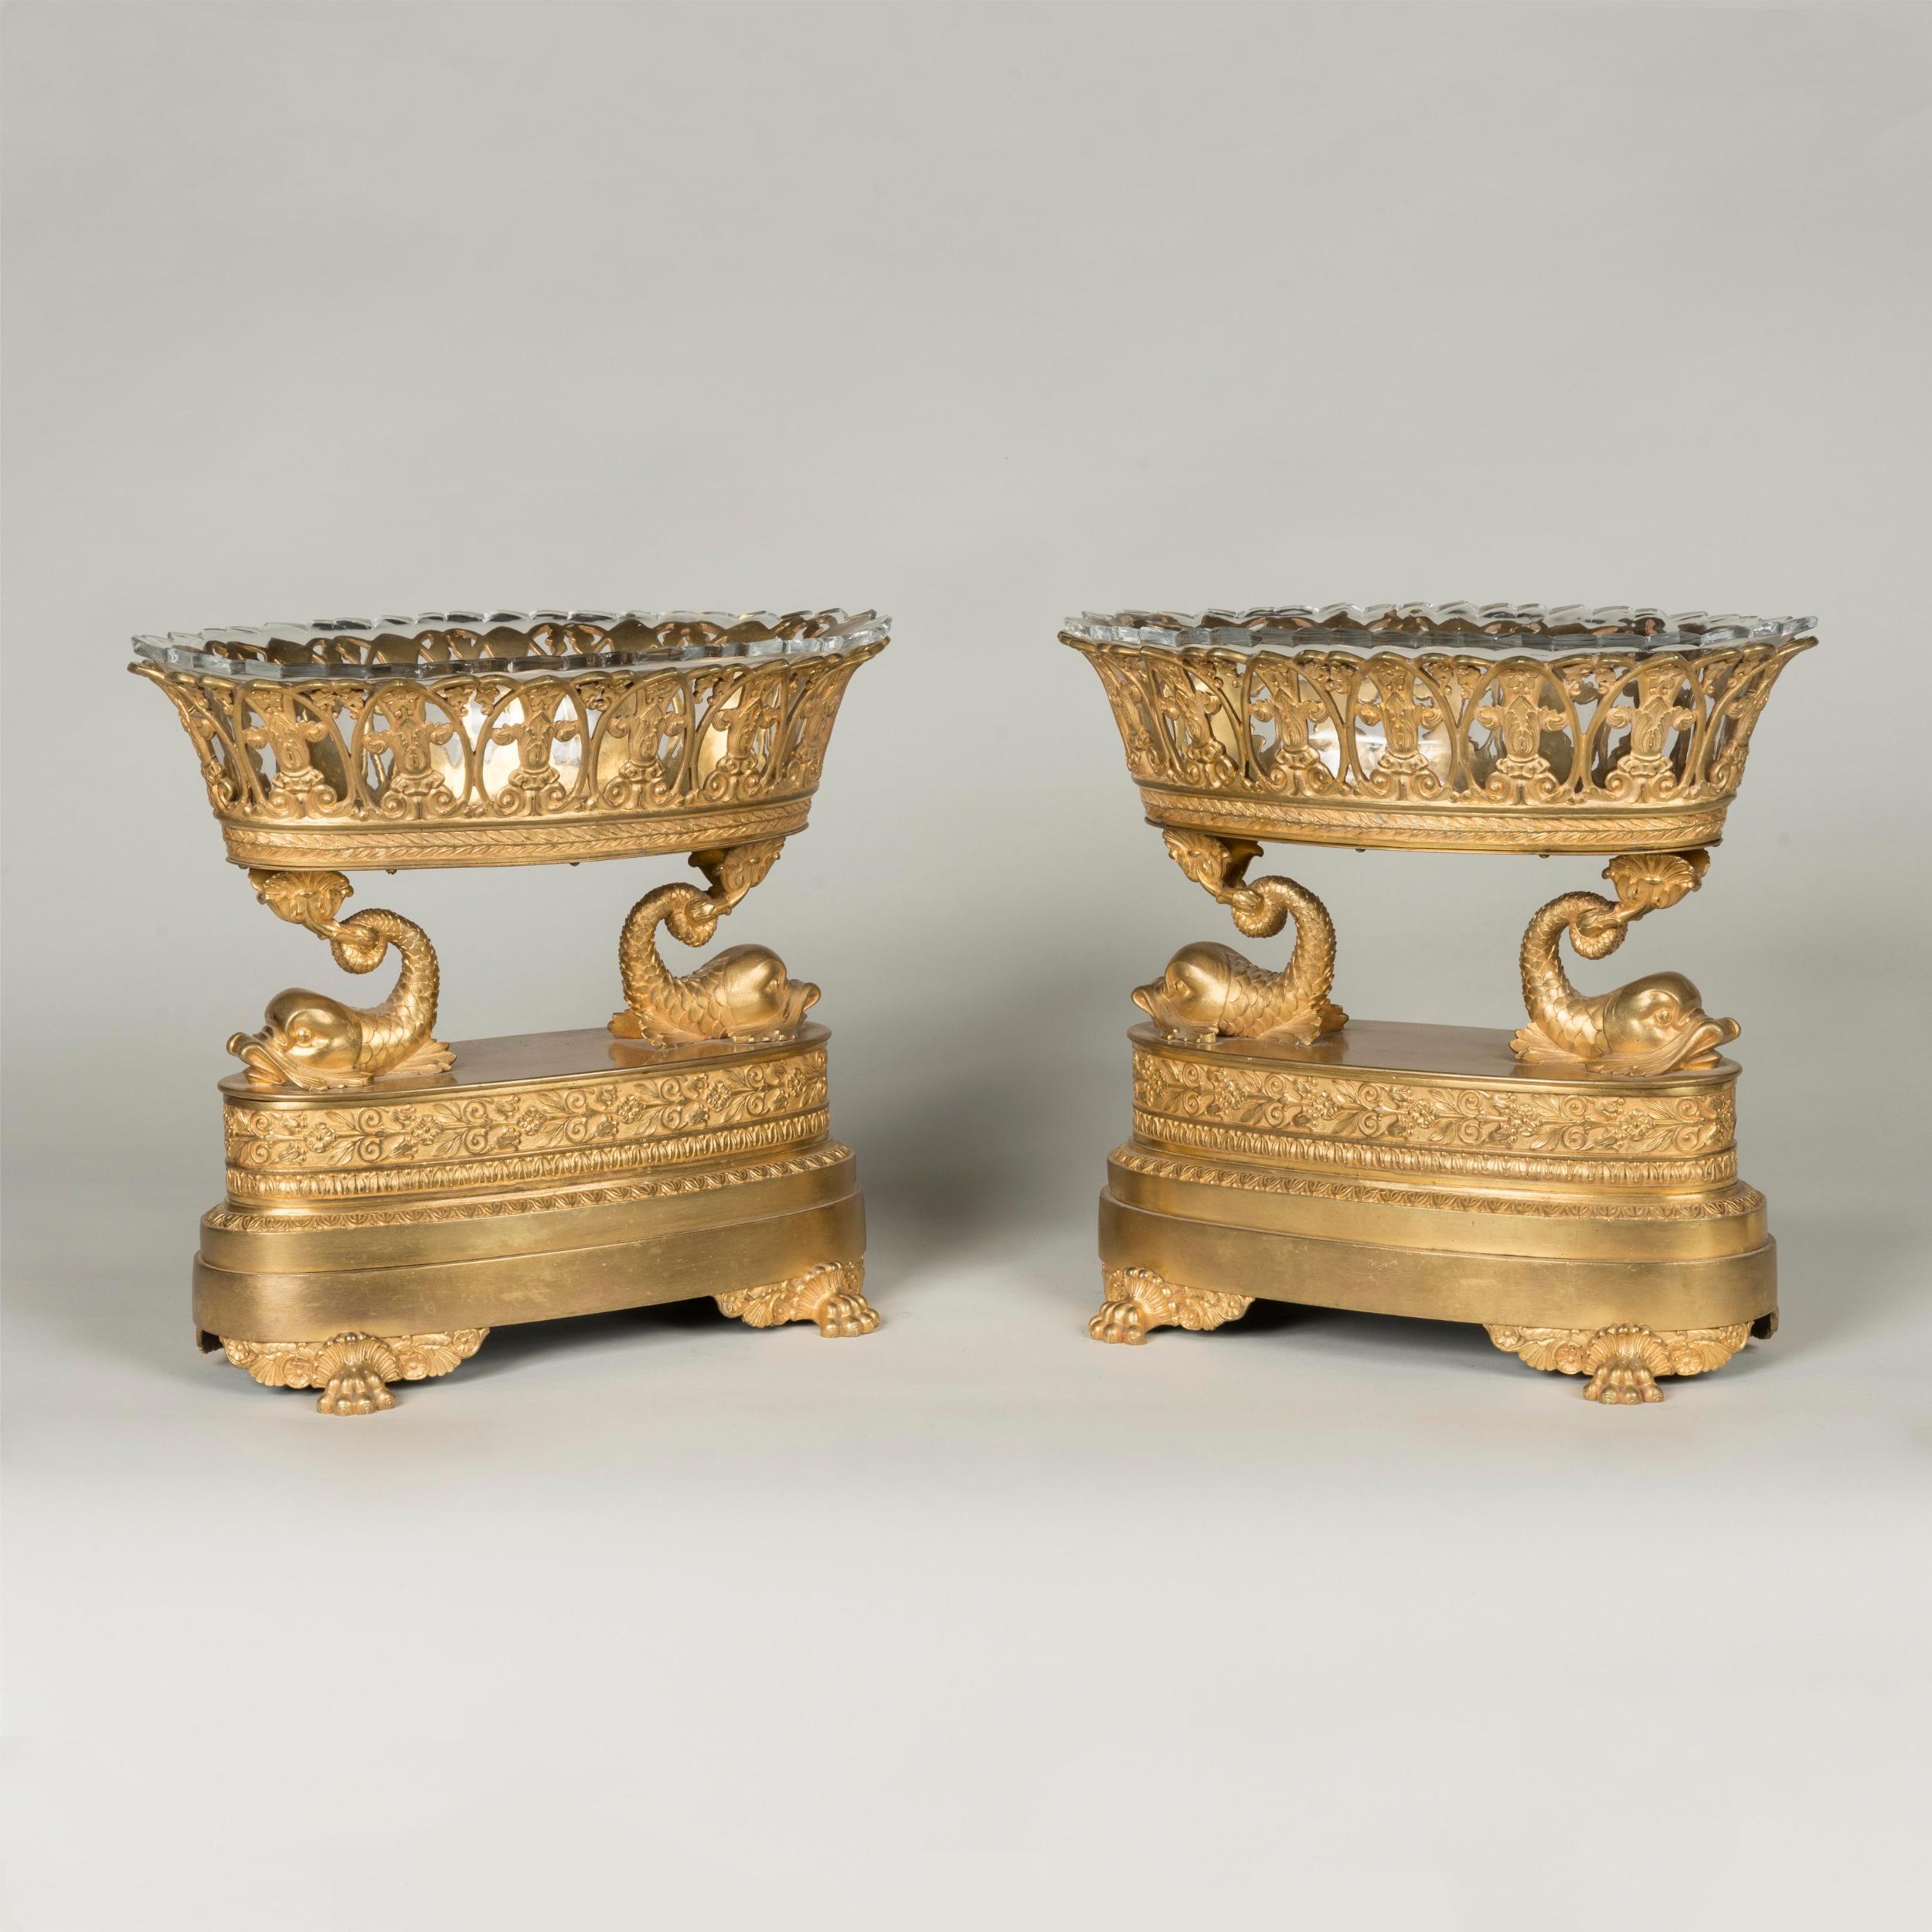 Zwei vergoldete Bronzeaufsätze aus der Empirezeit, 